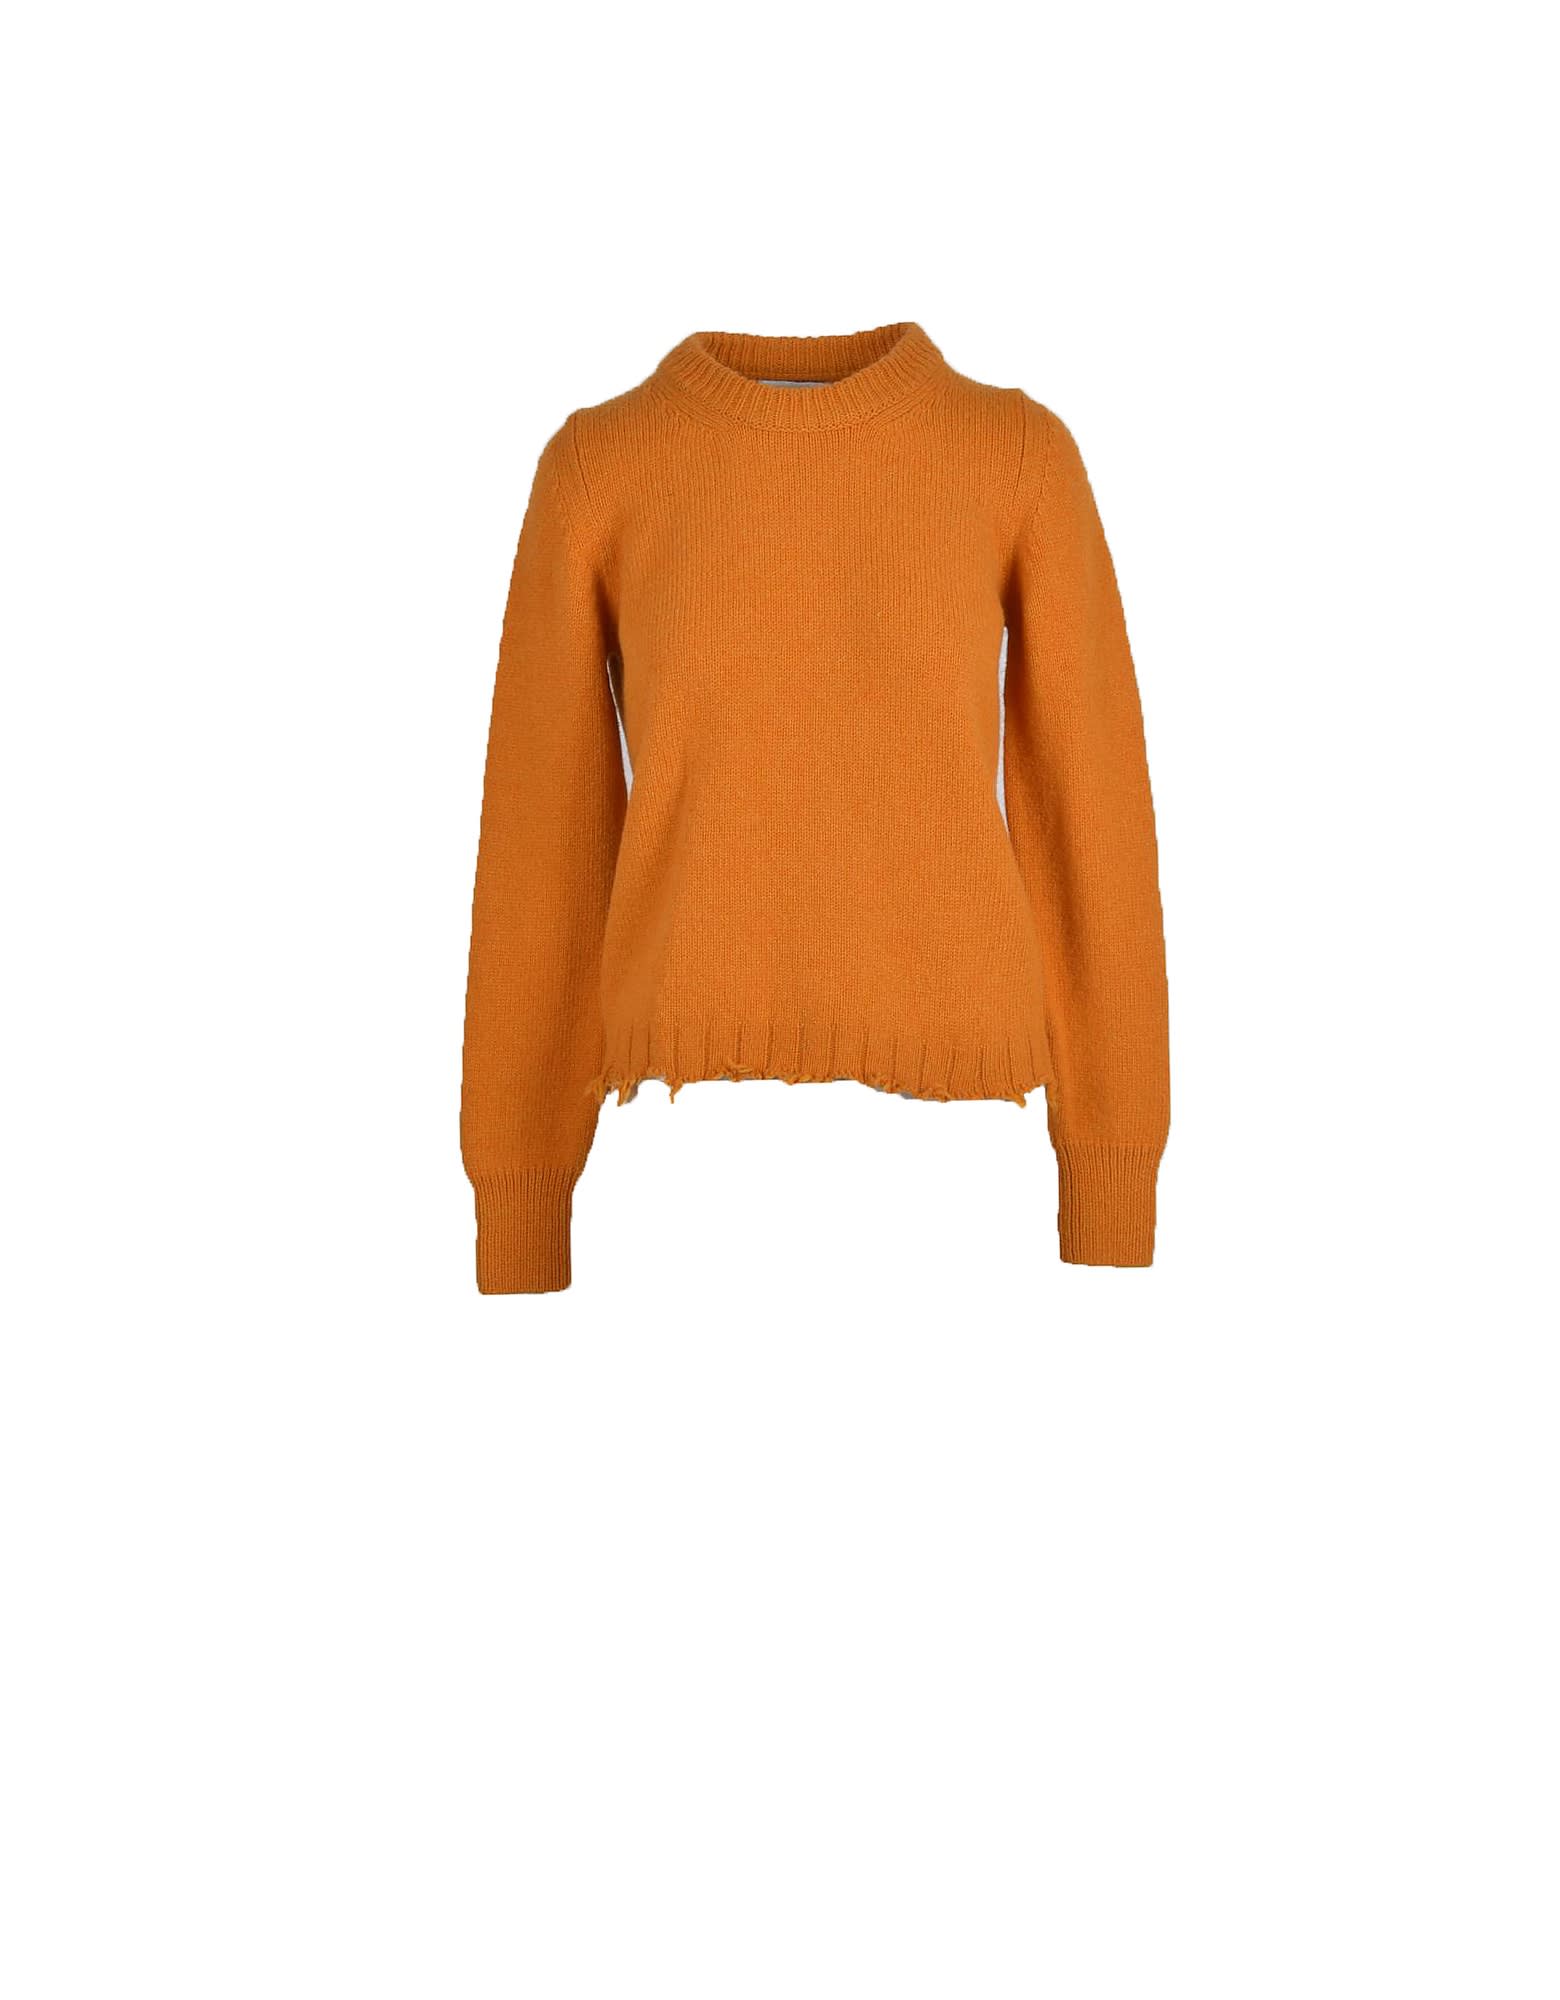 Covert Womens Orange Sweater